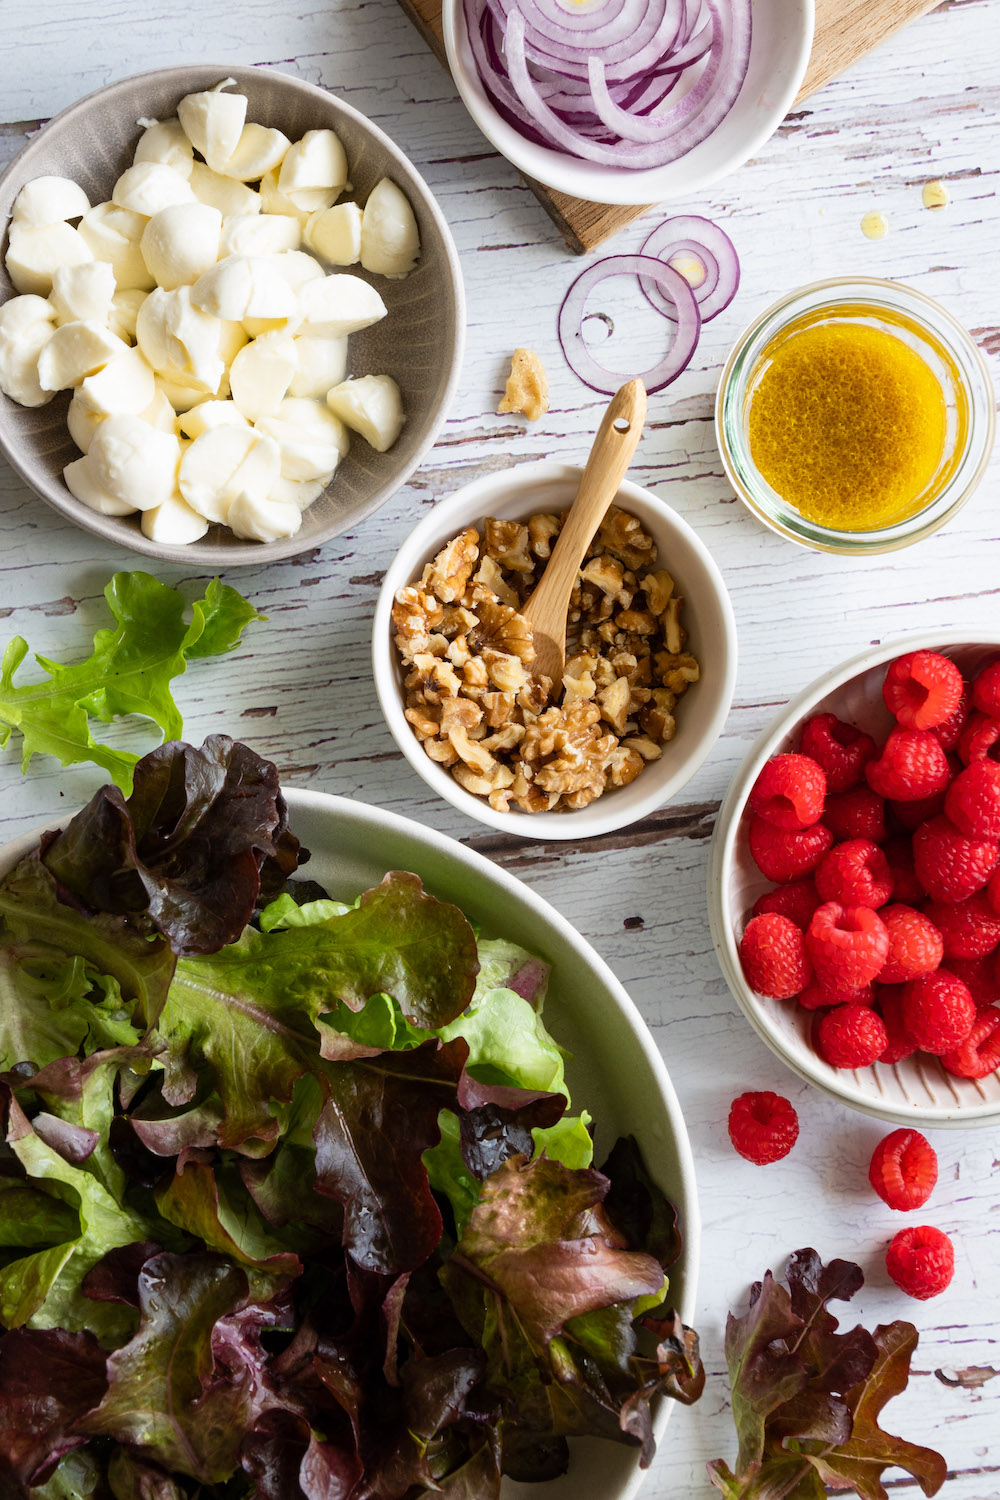 Zutaten für den Himbeersalat in Schüsseln: Blattsalat, Mozzarella, Walnüsse, Himbeeren, rote Zwiebeln und ein Dressing in einem Glas.